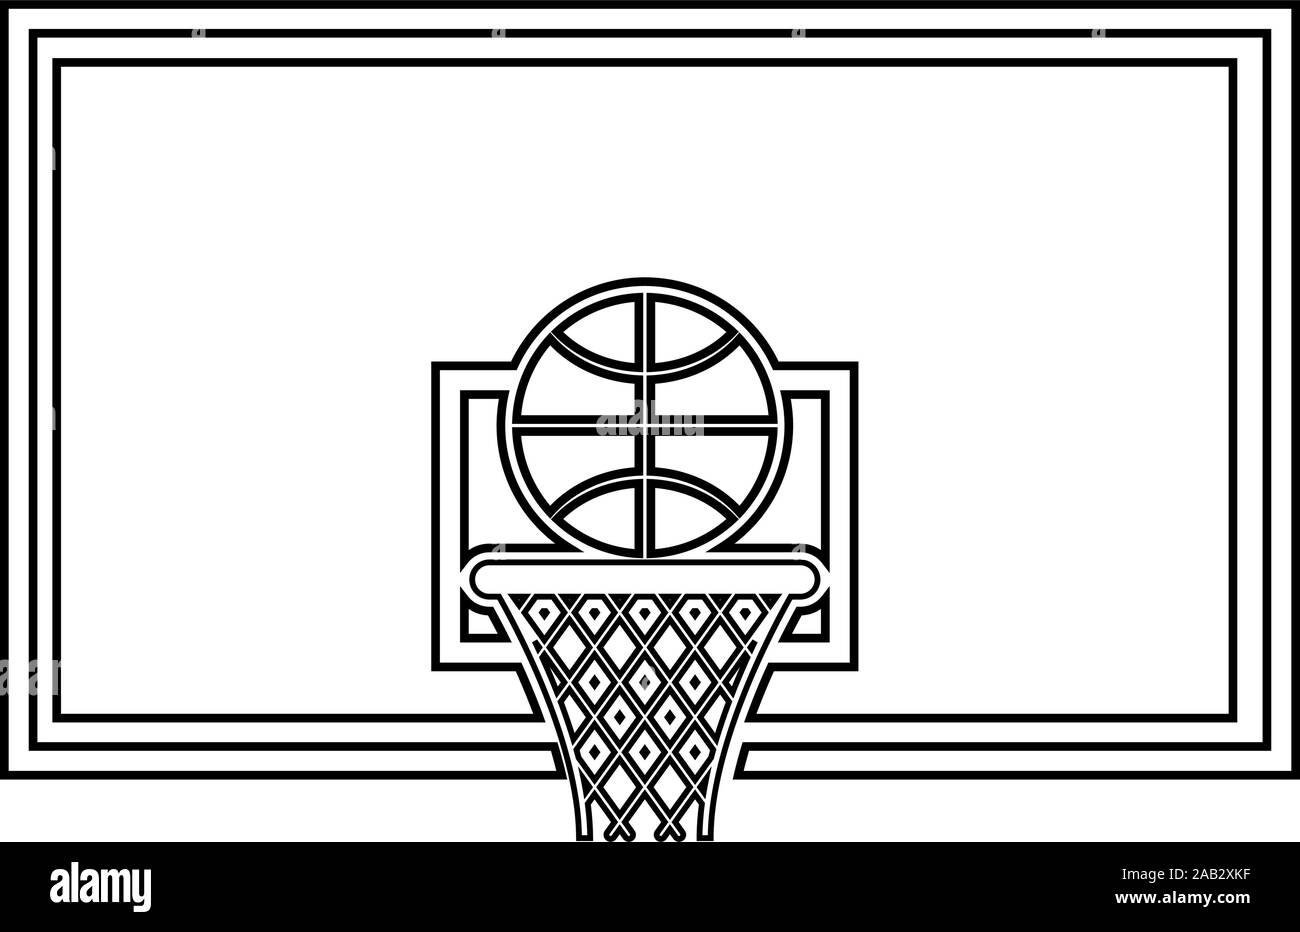 Basketball hoop e lavagna a sfera e grid icona del carrello profilo colore nero illustrazione vettoriale stile piatto semplice immagine Illustrazione Vettoriale